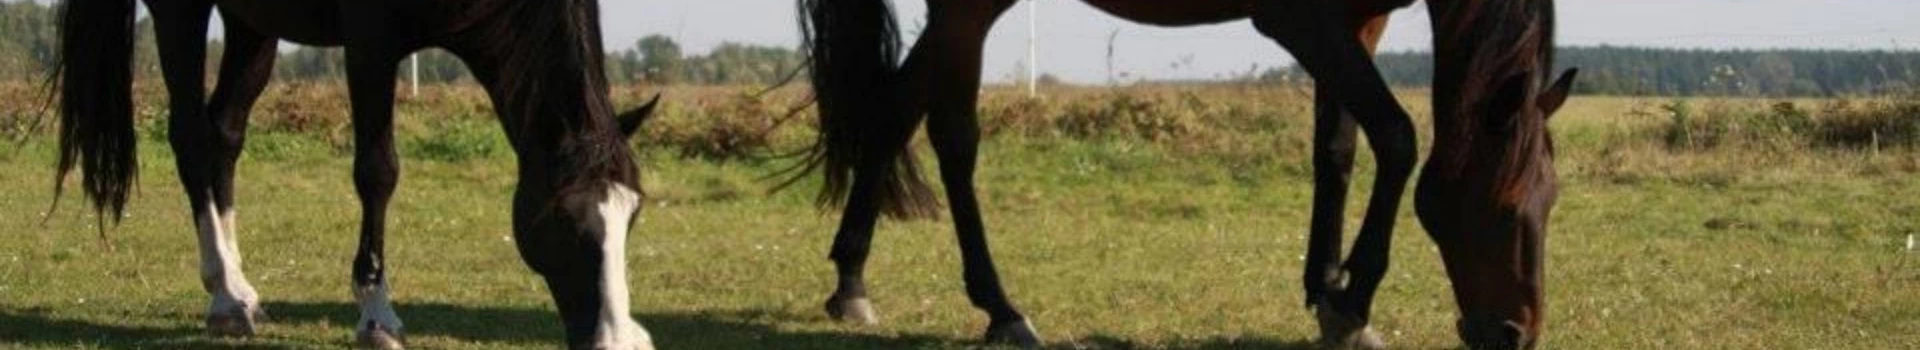 brązowy koń z czarną grzywą